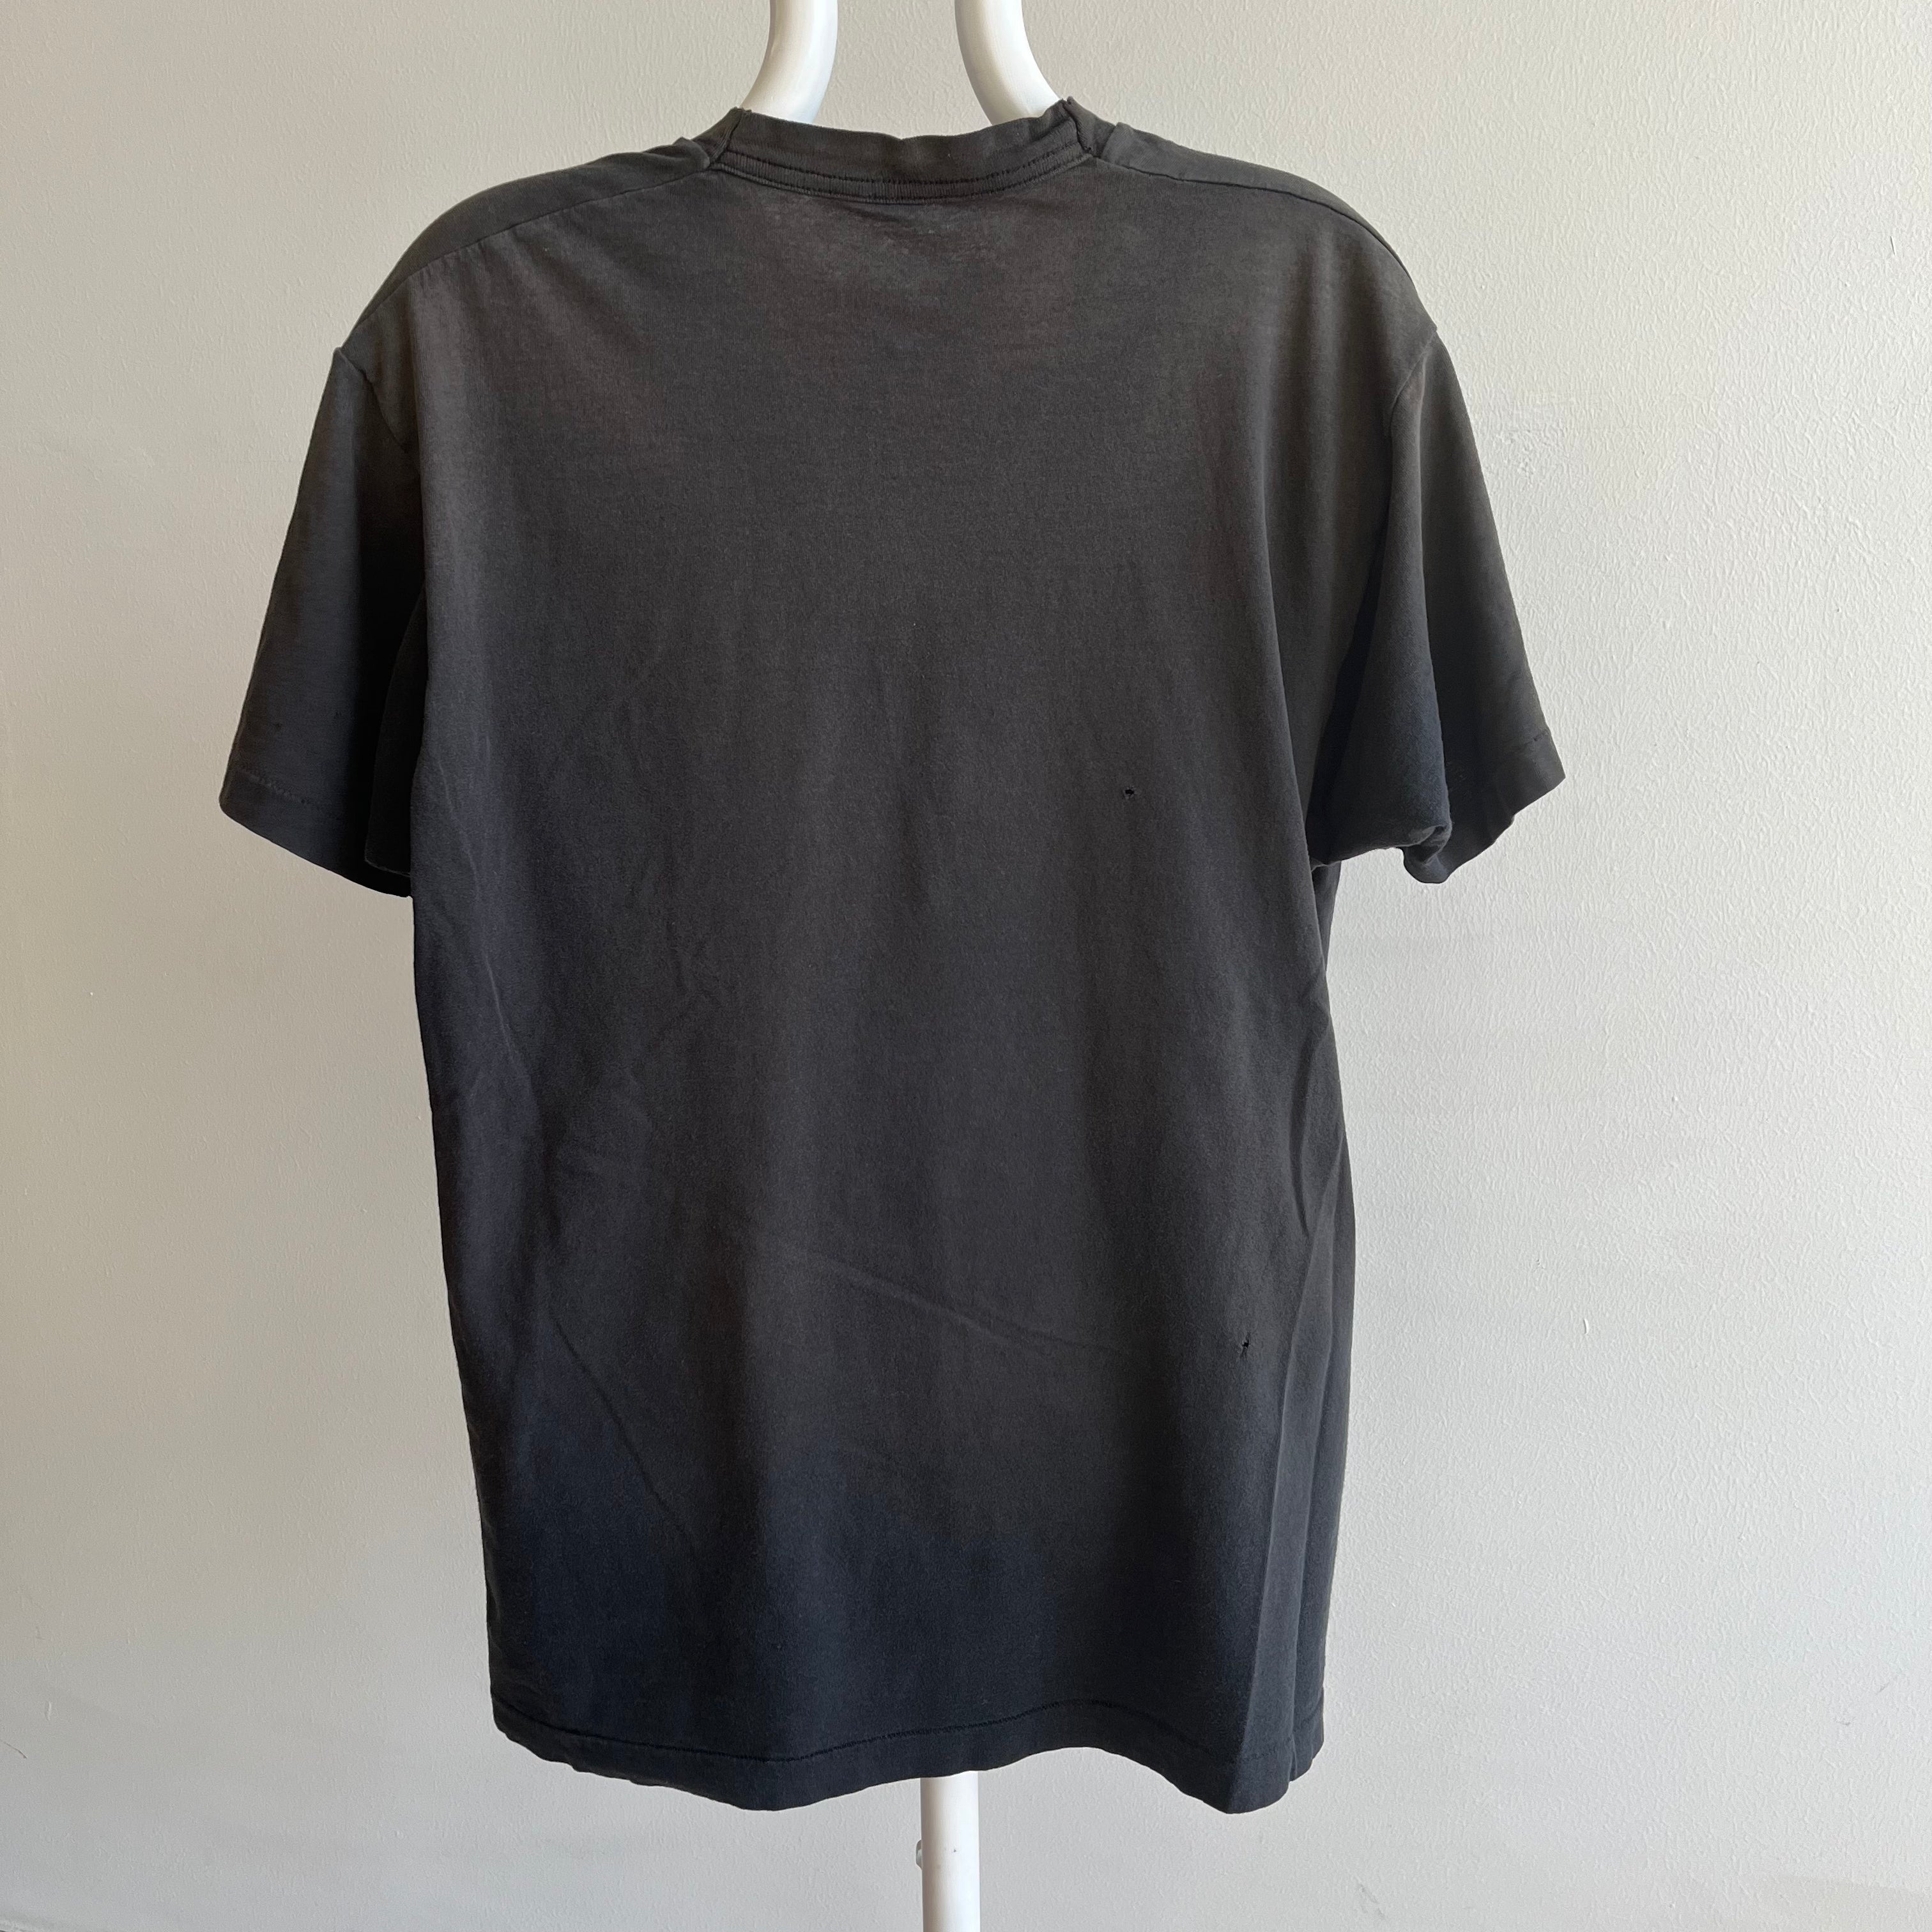 1980s FOTL Faded Blank Black T-shirt de poche parfaitement usé et taché de peinture